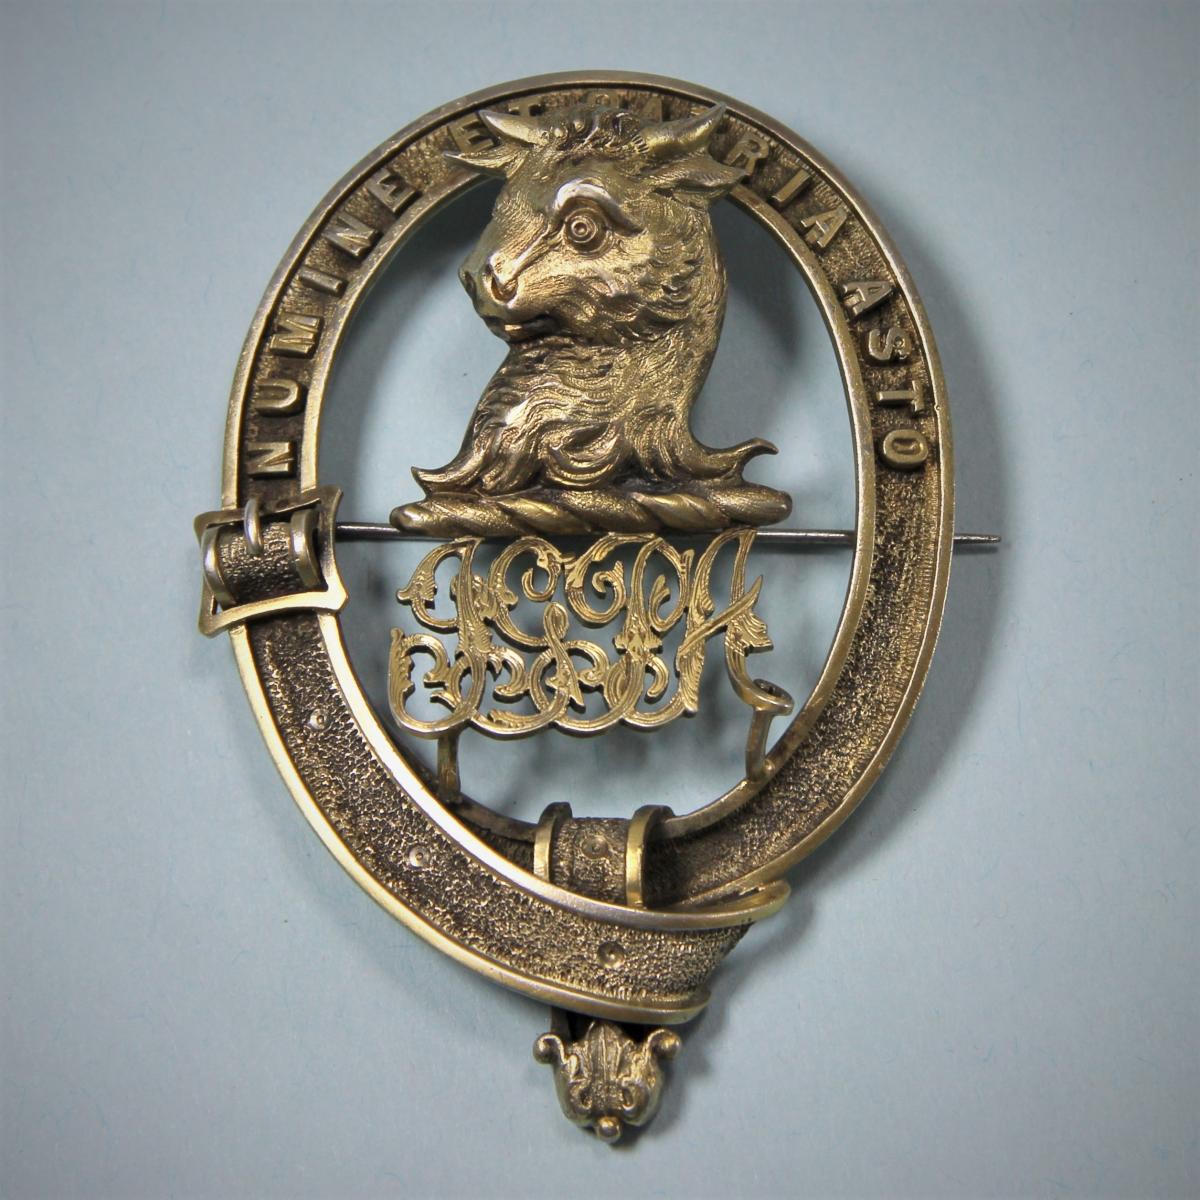 ASTON Antique Silver Gilt Scottish Clan Badge. Circa 1870